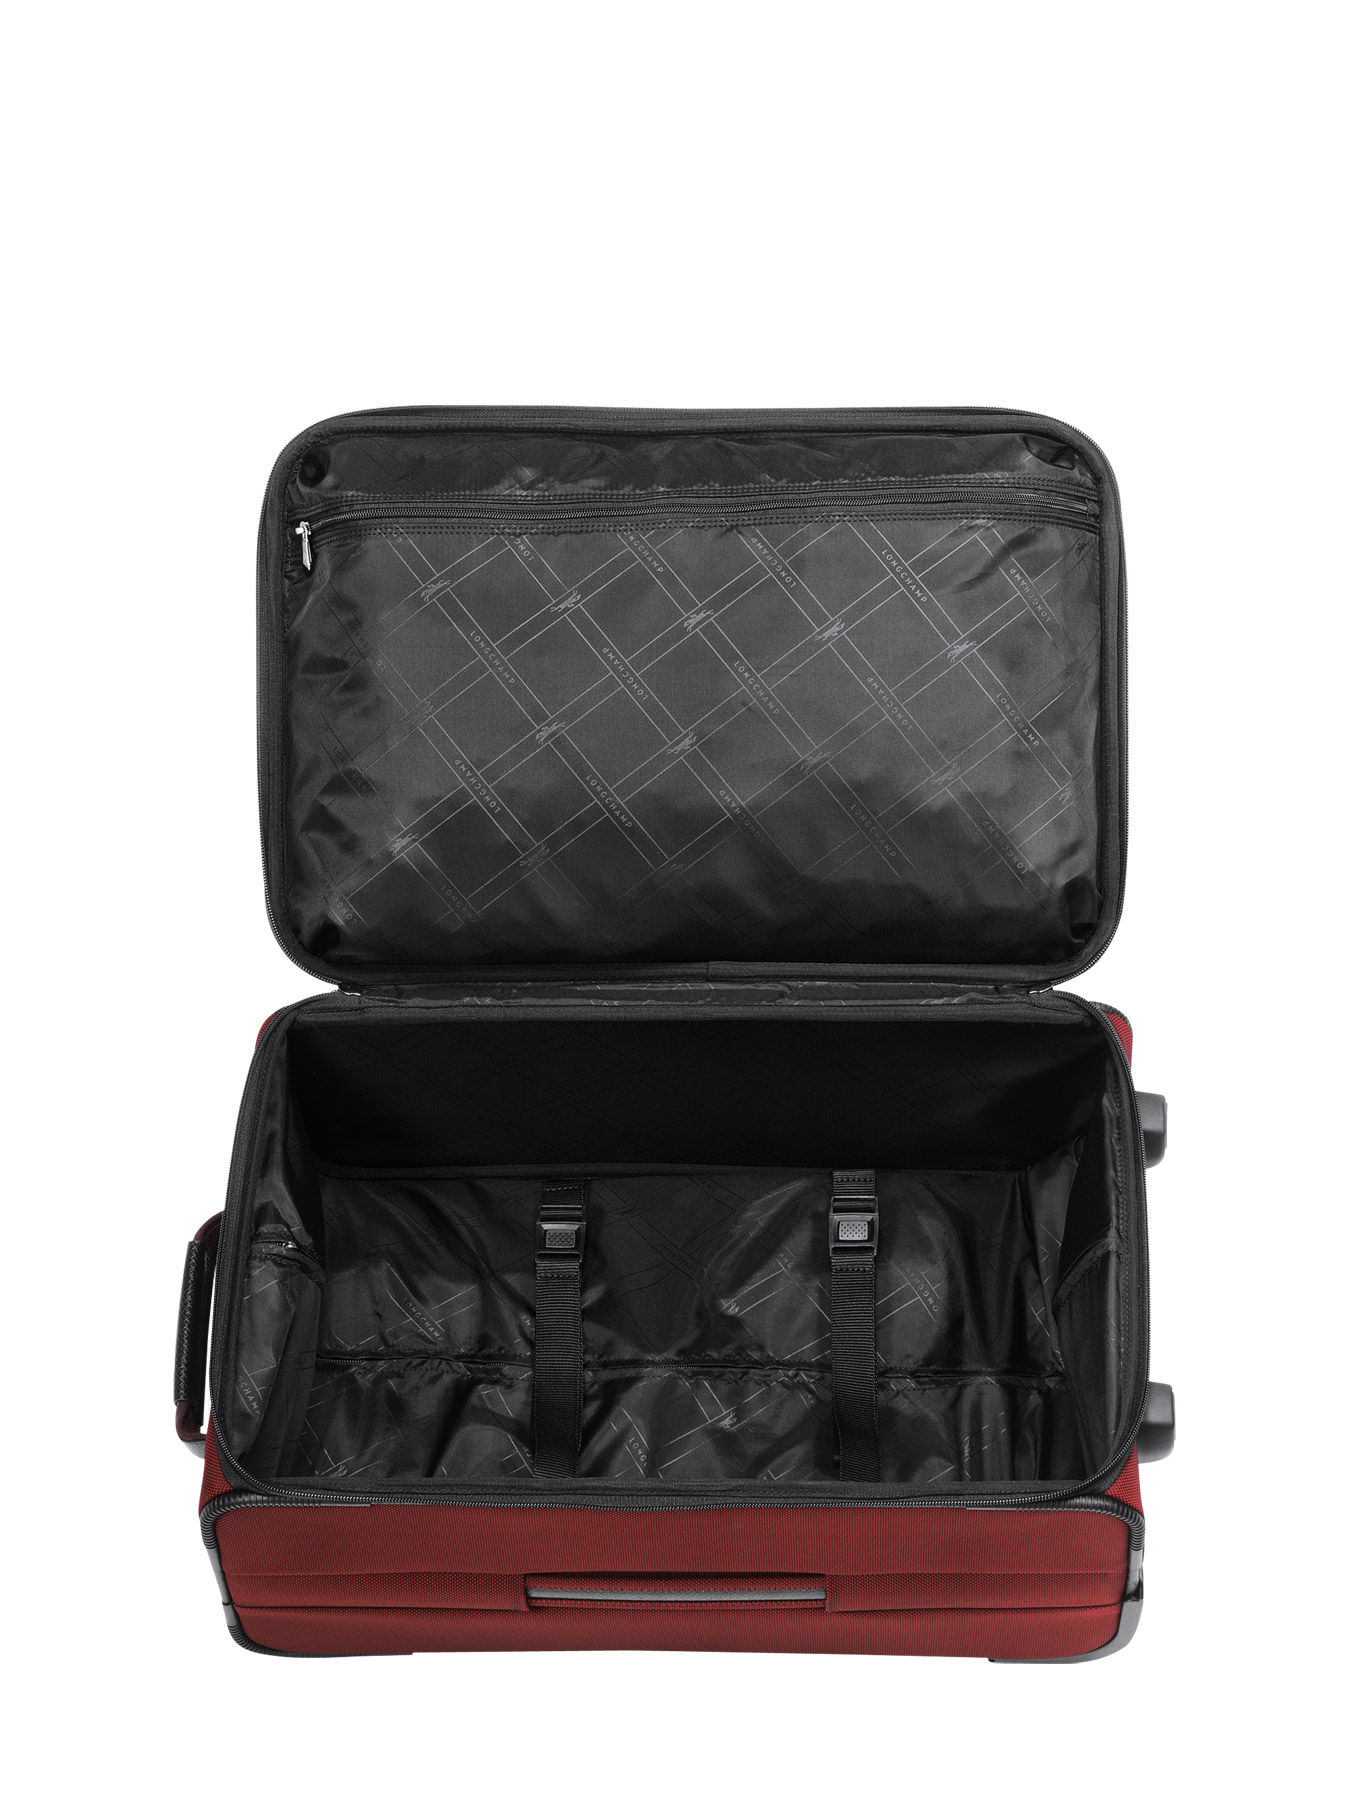 longchamp boxford suitcase